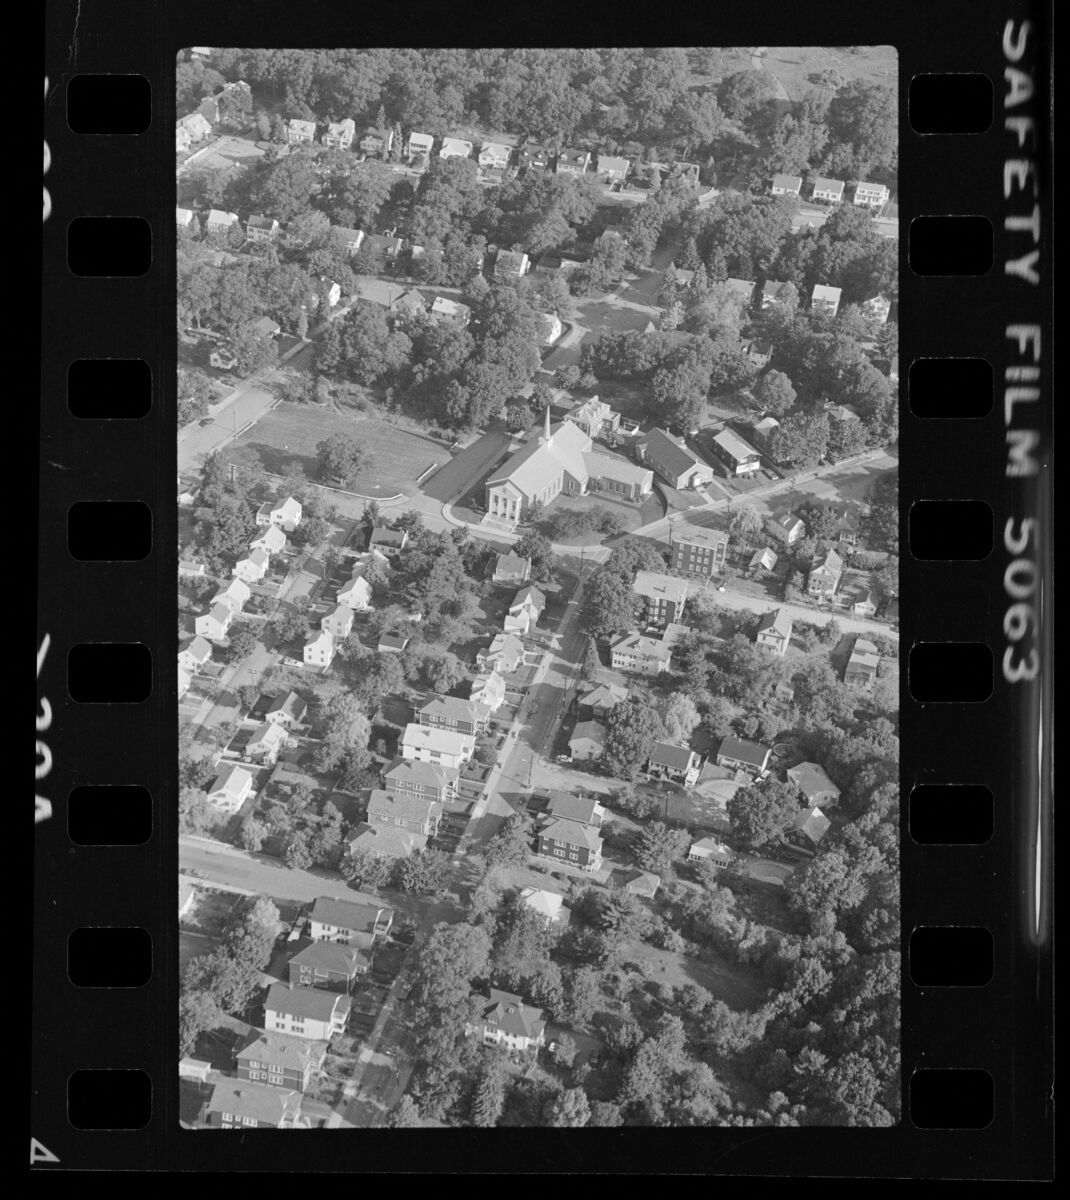 Boston suburbs shown in a 1976 aerial photo